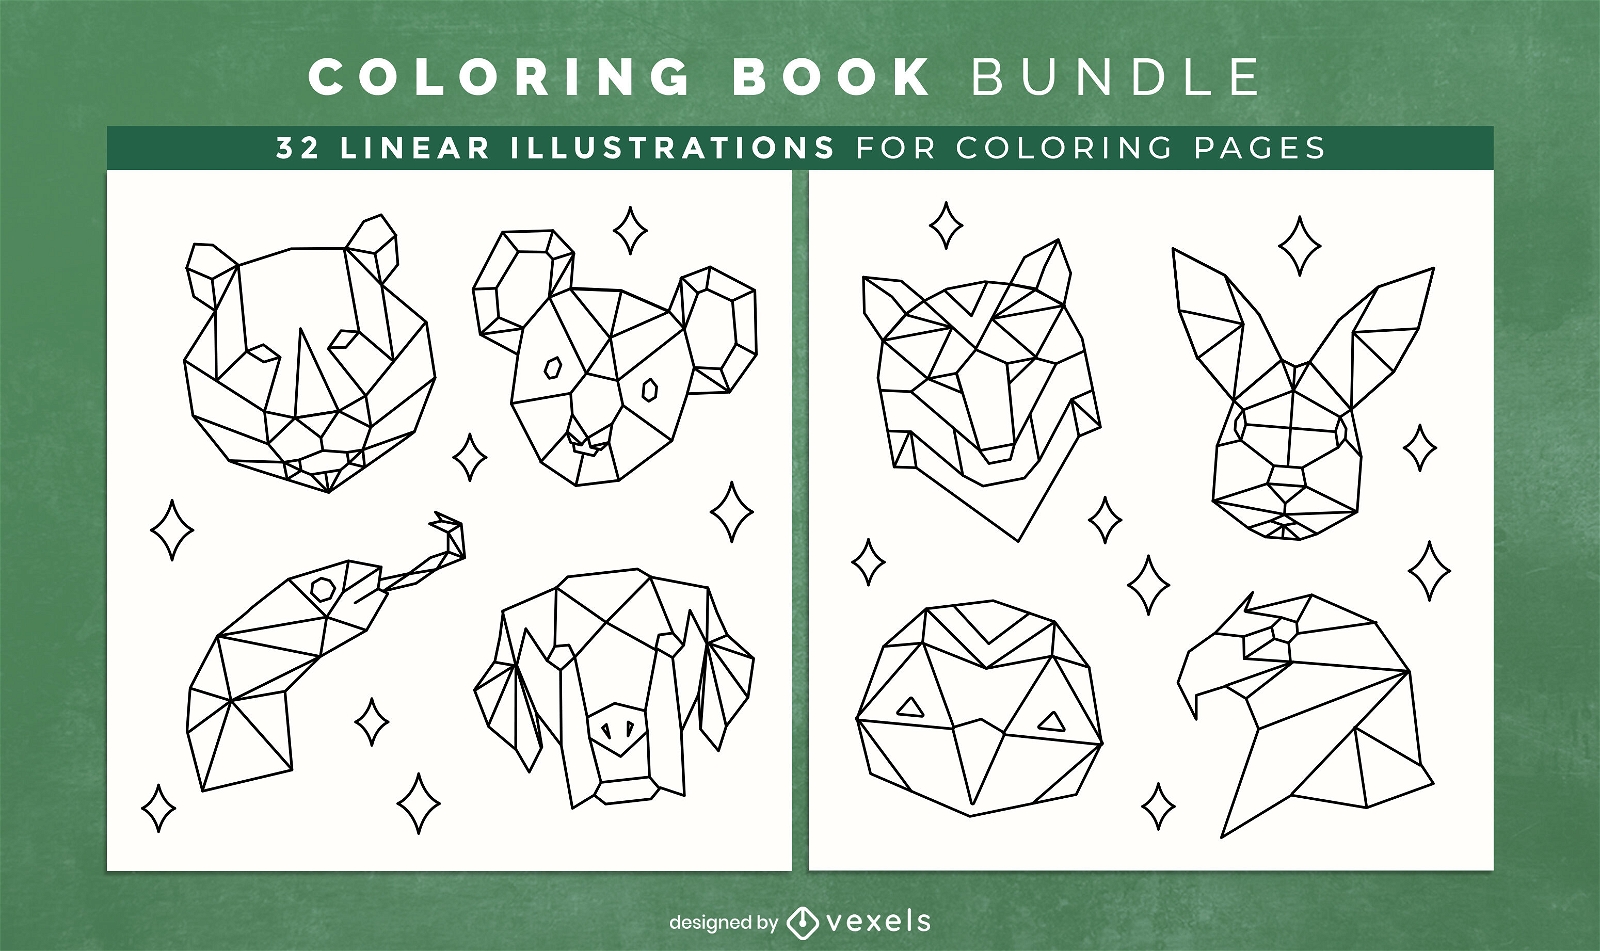 Animais poligonais para colorir páginas de design de livros